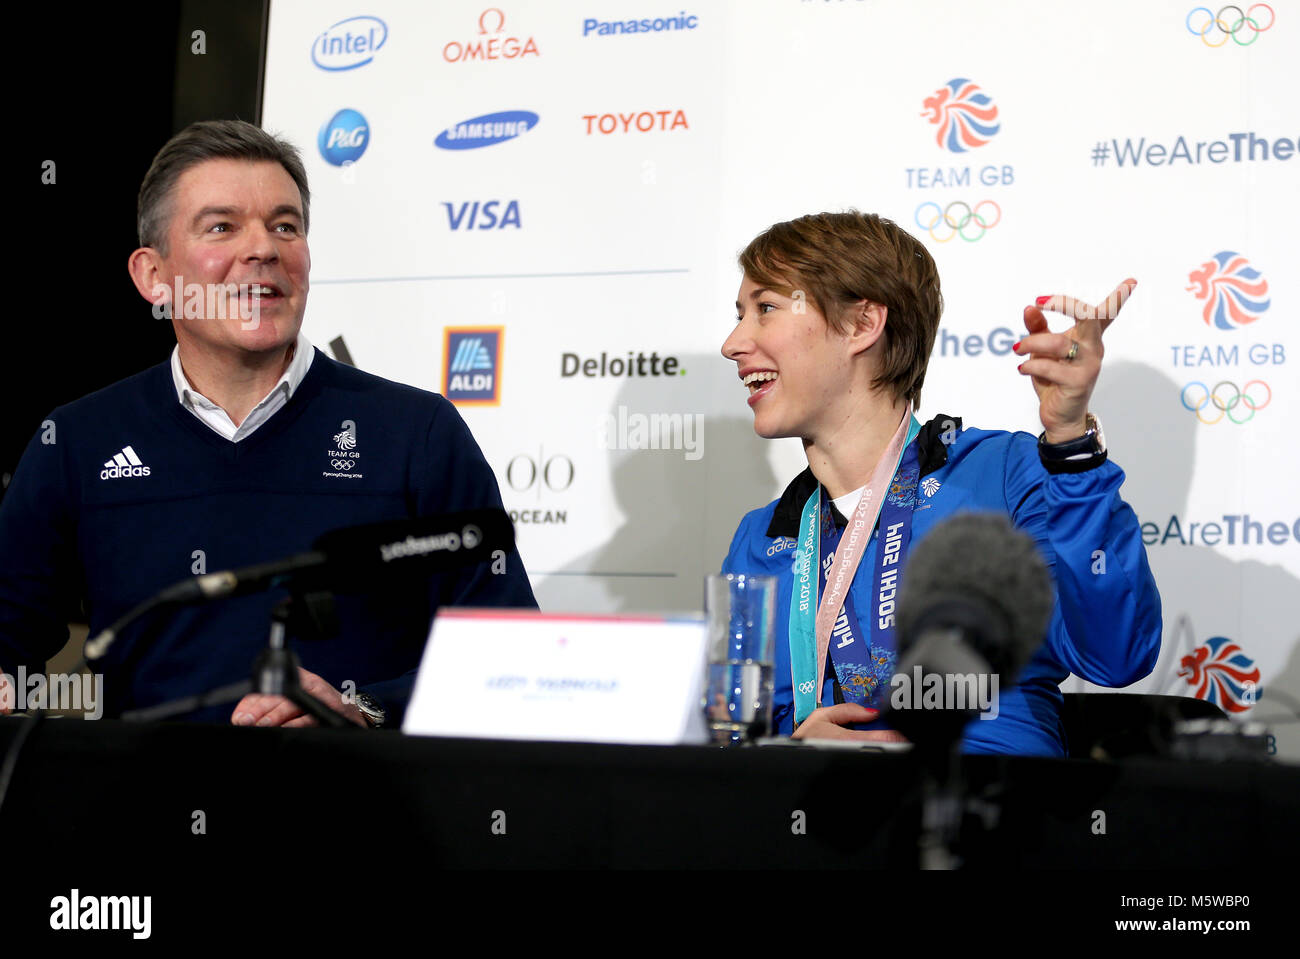 Mannschaft GB Vorsitzende Sir Hugh Robertson und Lizzy Yarnold während einer Pressekonferenz nach Team GB Ankunft am Flughafen Heathrow nach PyeongChang 2018 Winter-olympischen Spiele. Stockfoto